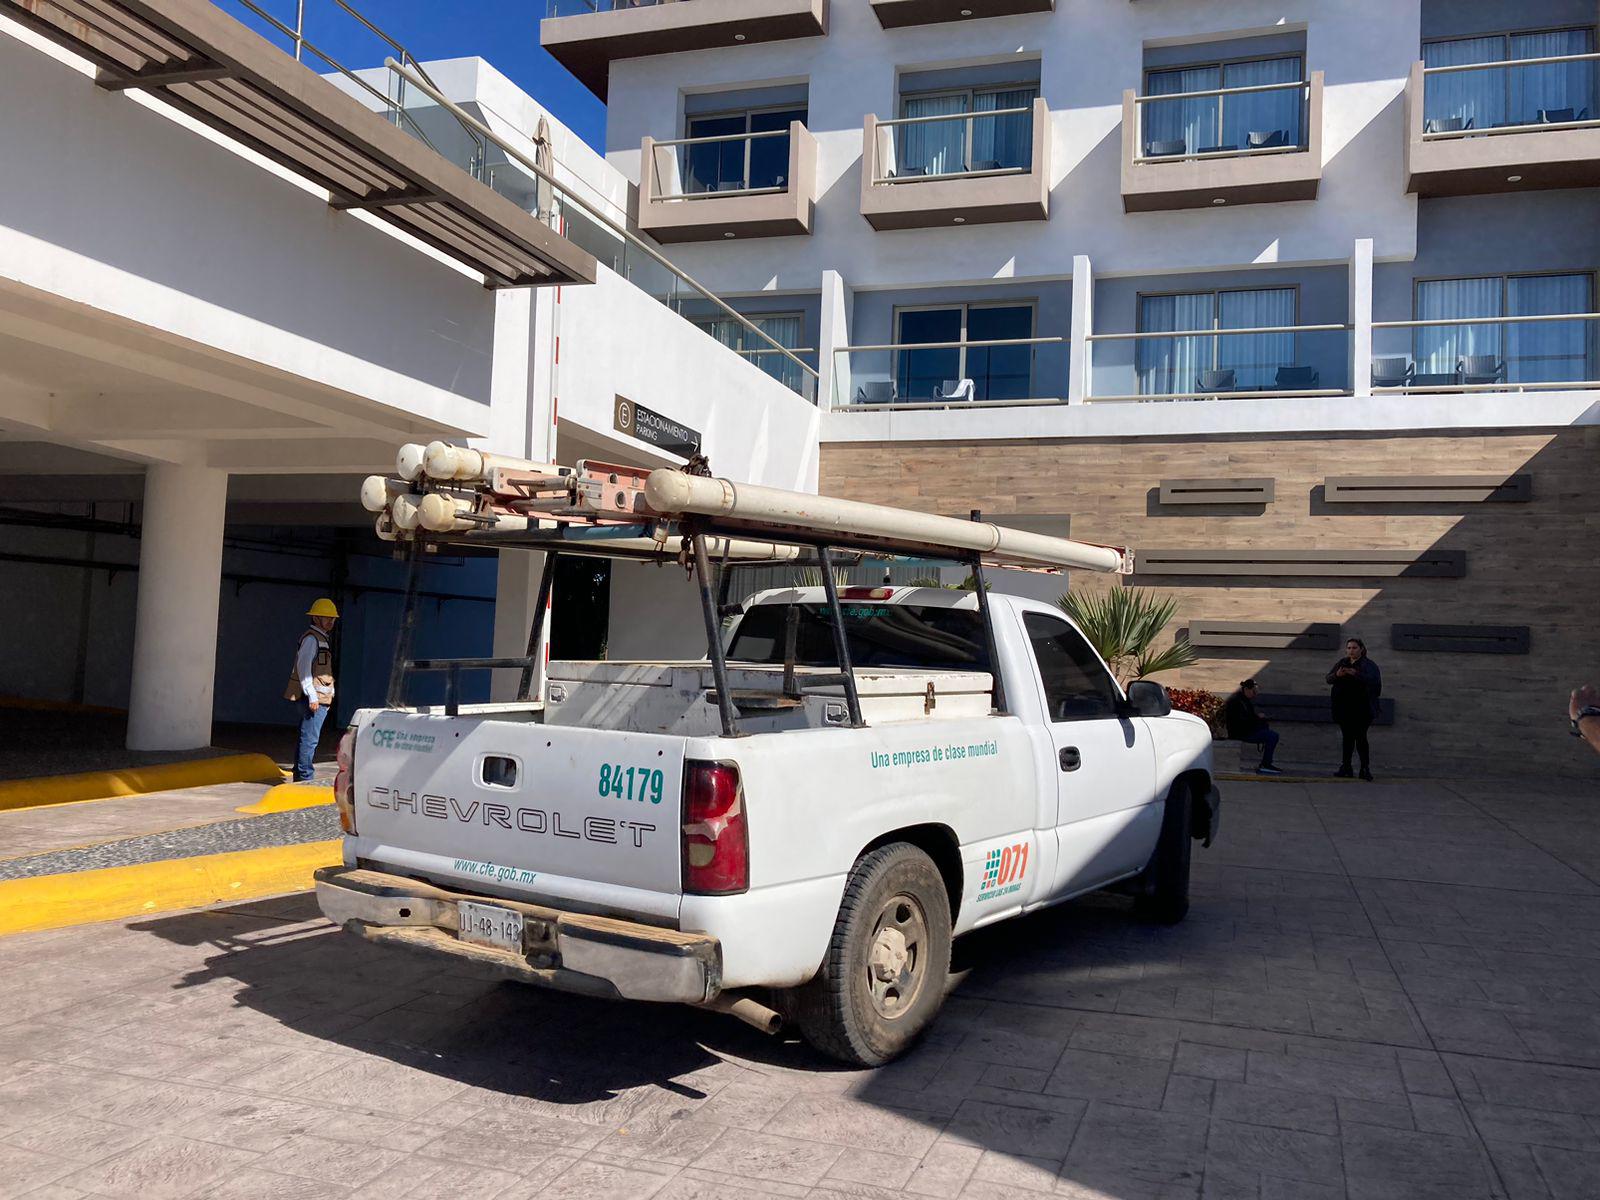 $!Cortan suministro eléctrico a hotel de Mazatlán tras hallar anomalías en consumo